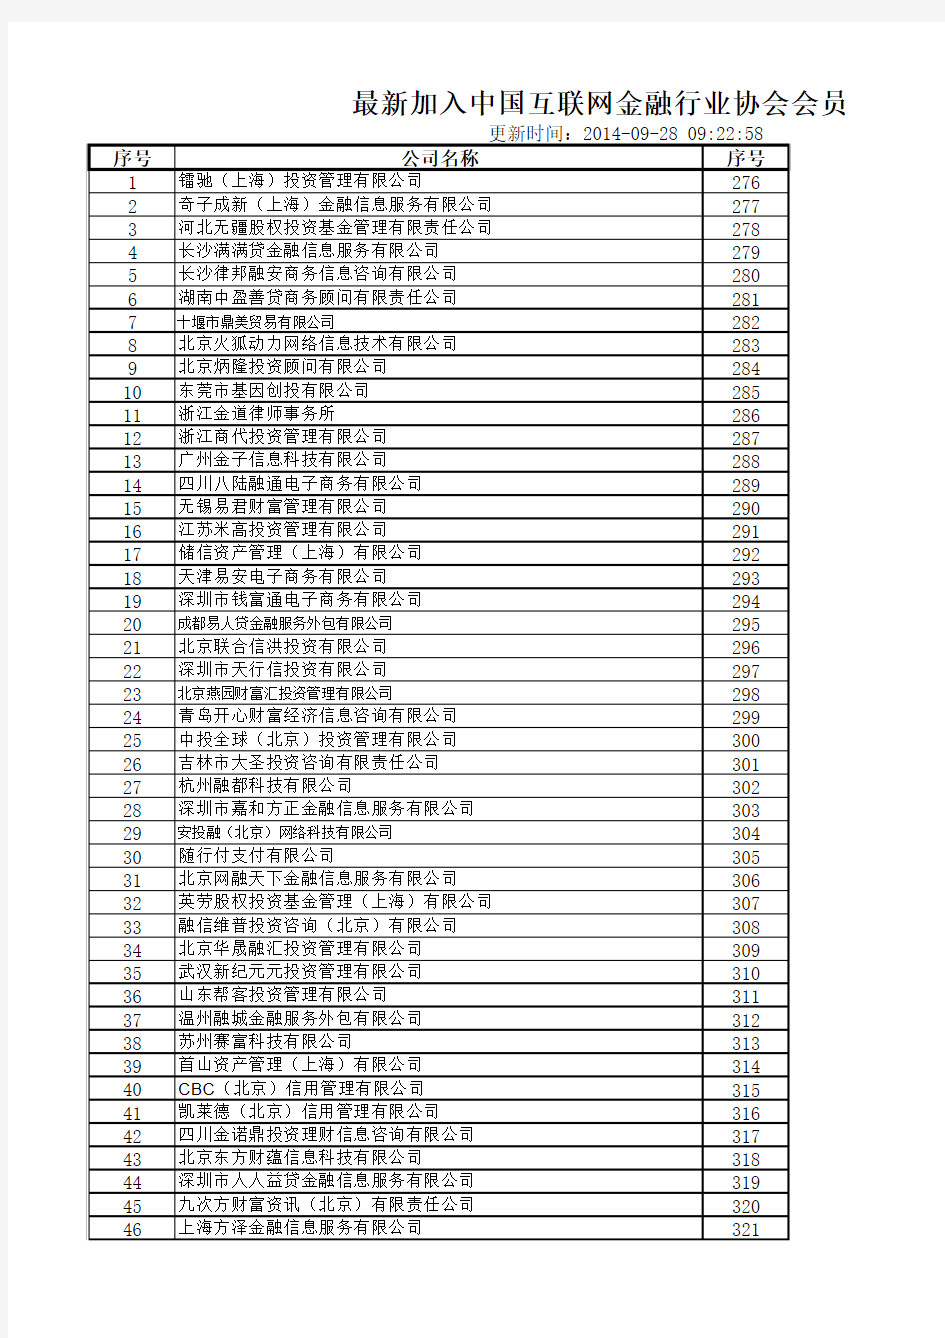 加入中国互联网金融协会会员名单